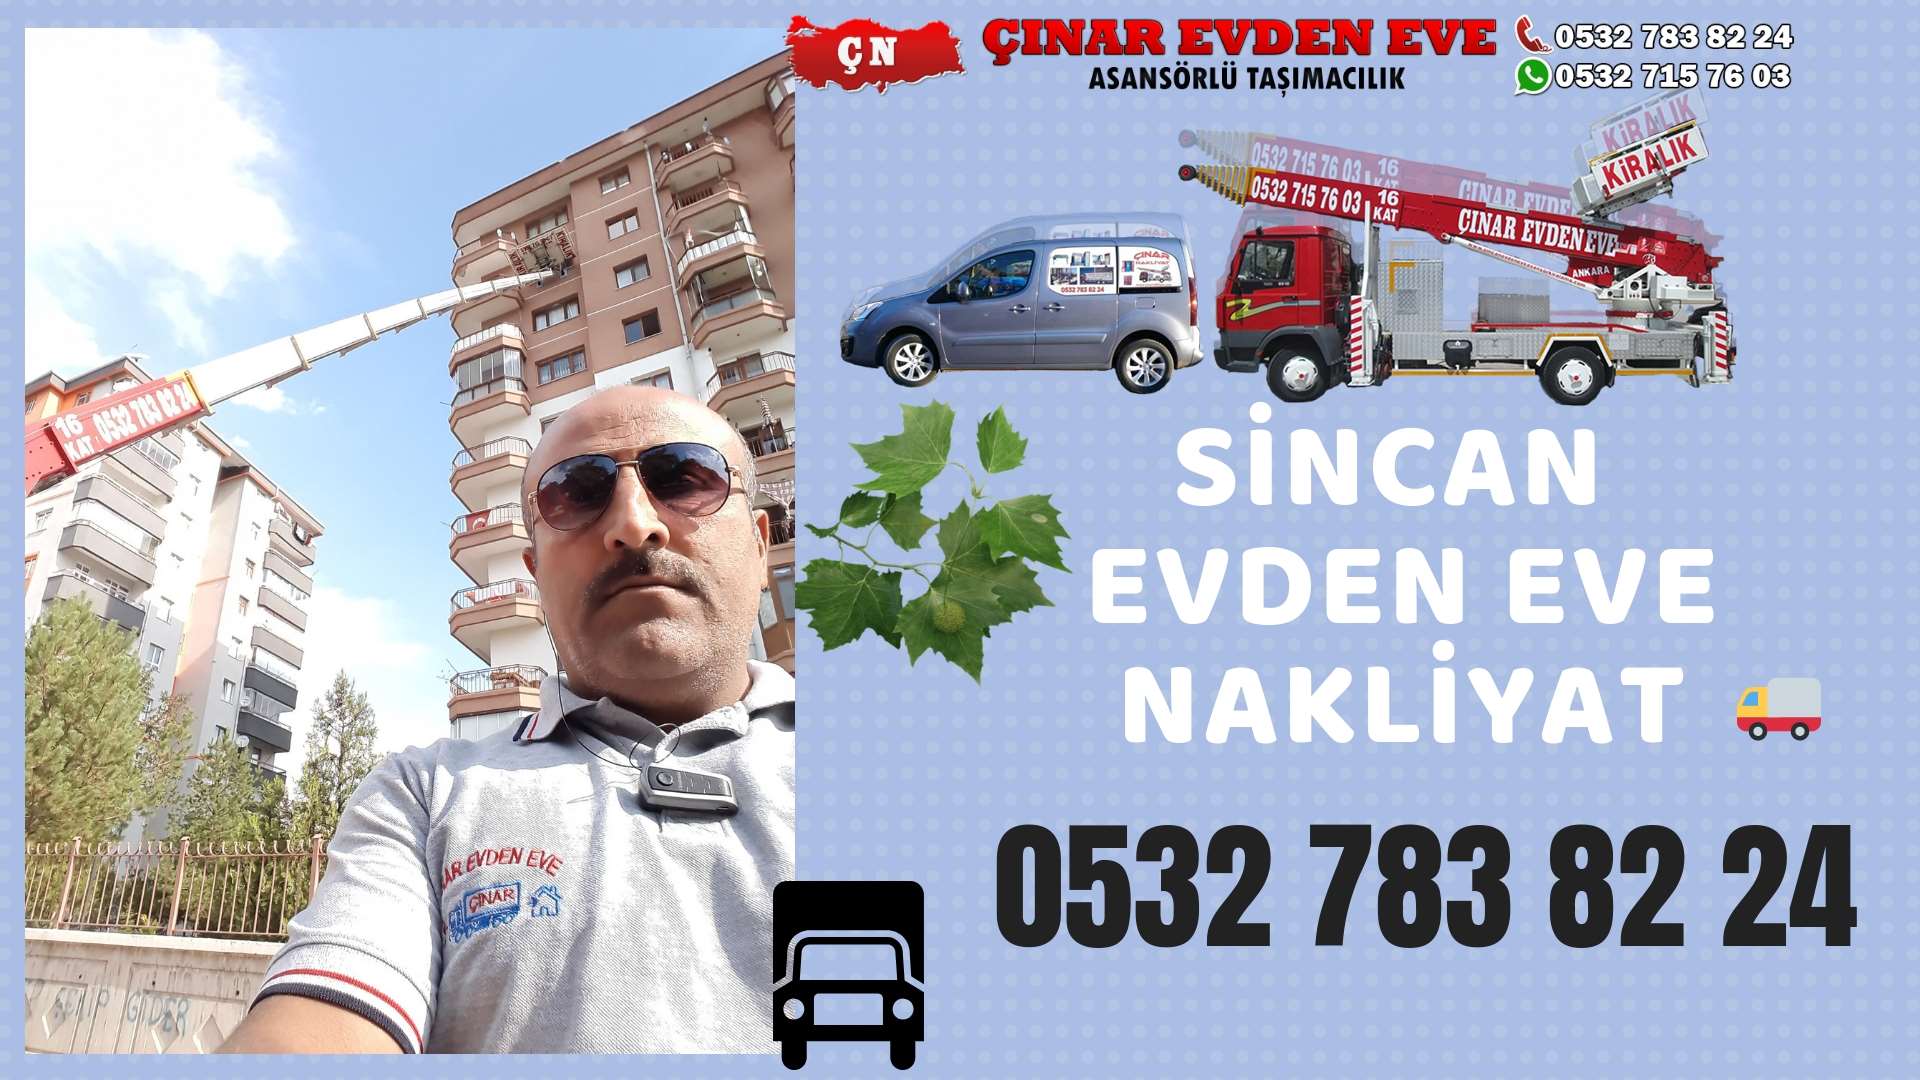 Ankara İvedik Evden Eve Nakliyat, Asansörlü Taşımacılık, Ofis / İş Yeri Taşıma 0532 715 76 03